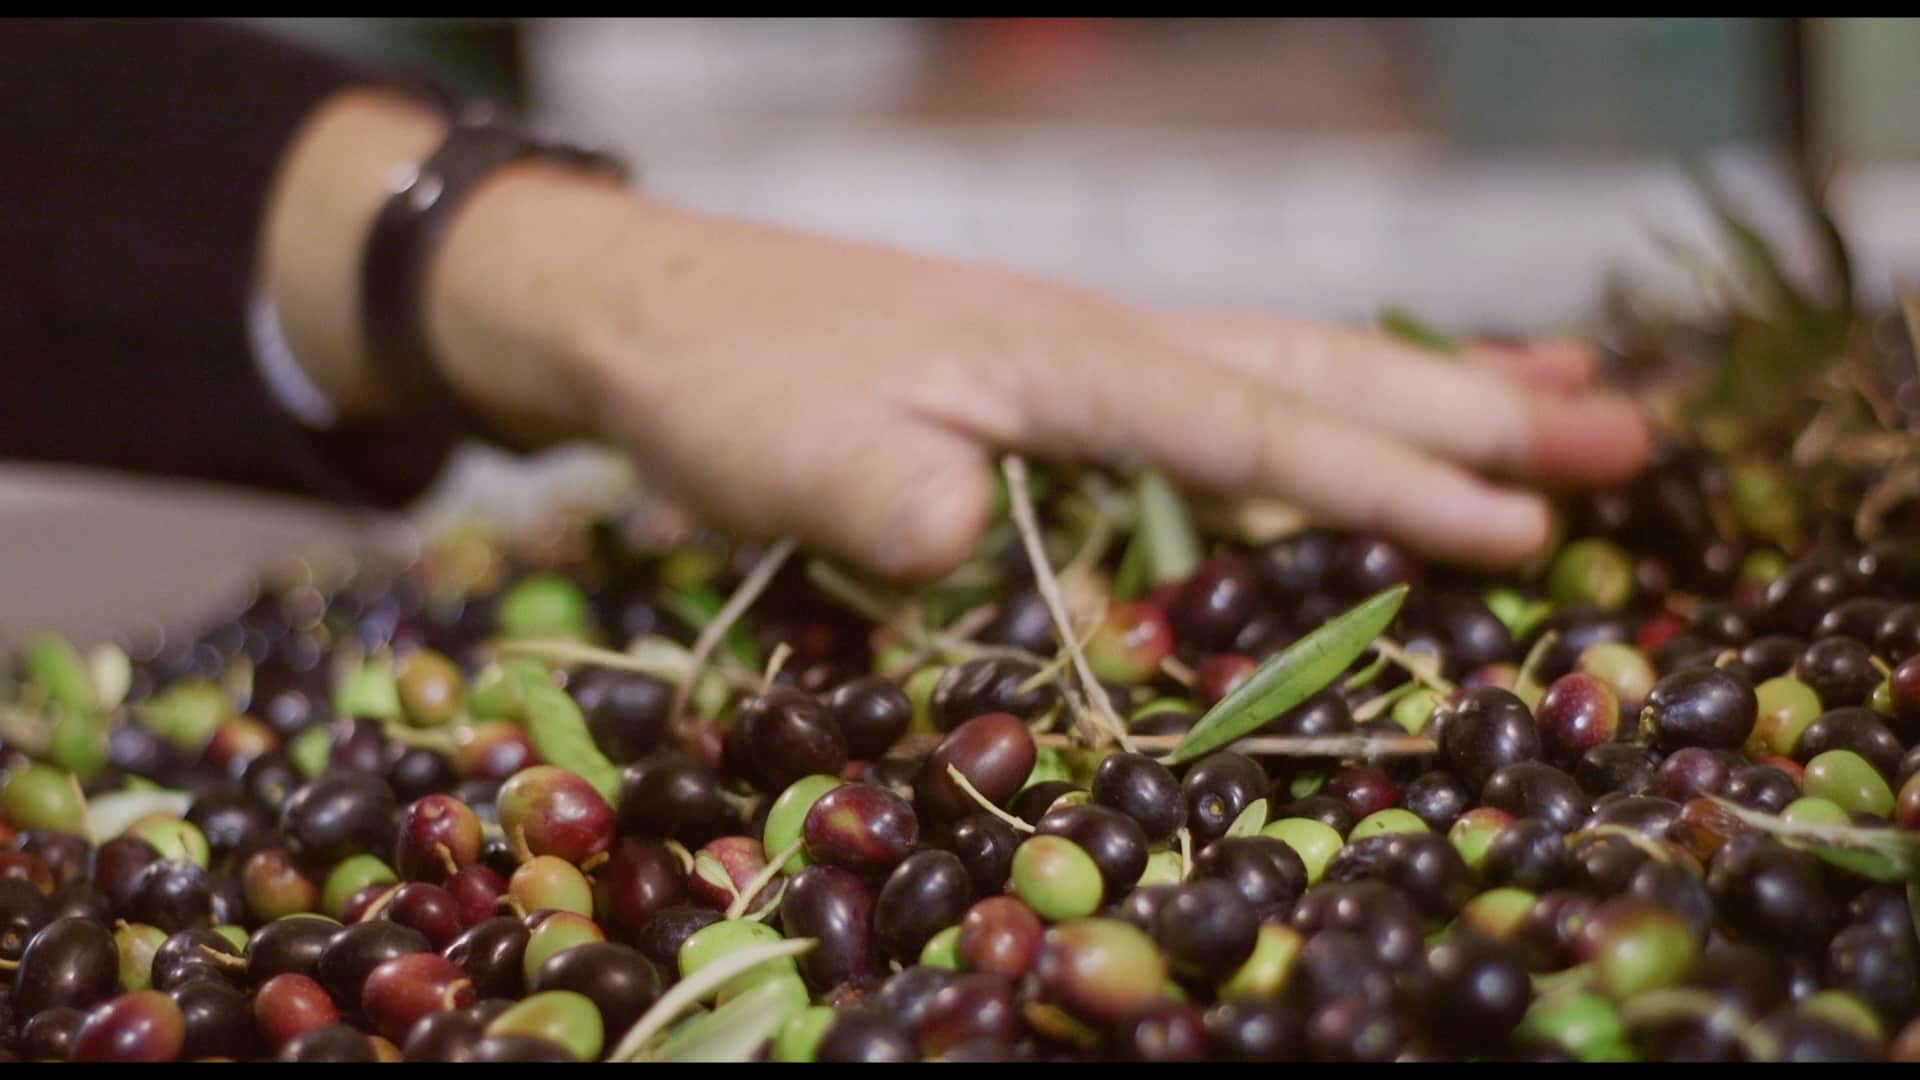 olive da agricoltura biologica per creare il nostro olio extravergine d'oliva biologico Contedoro